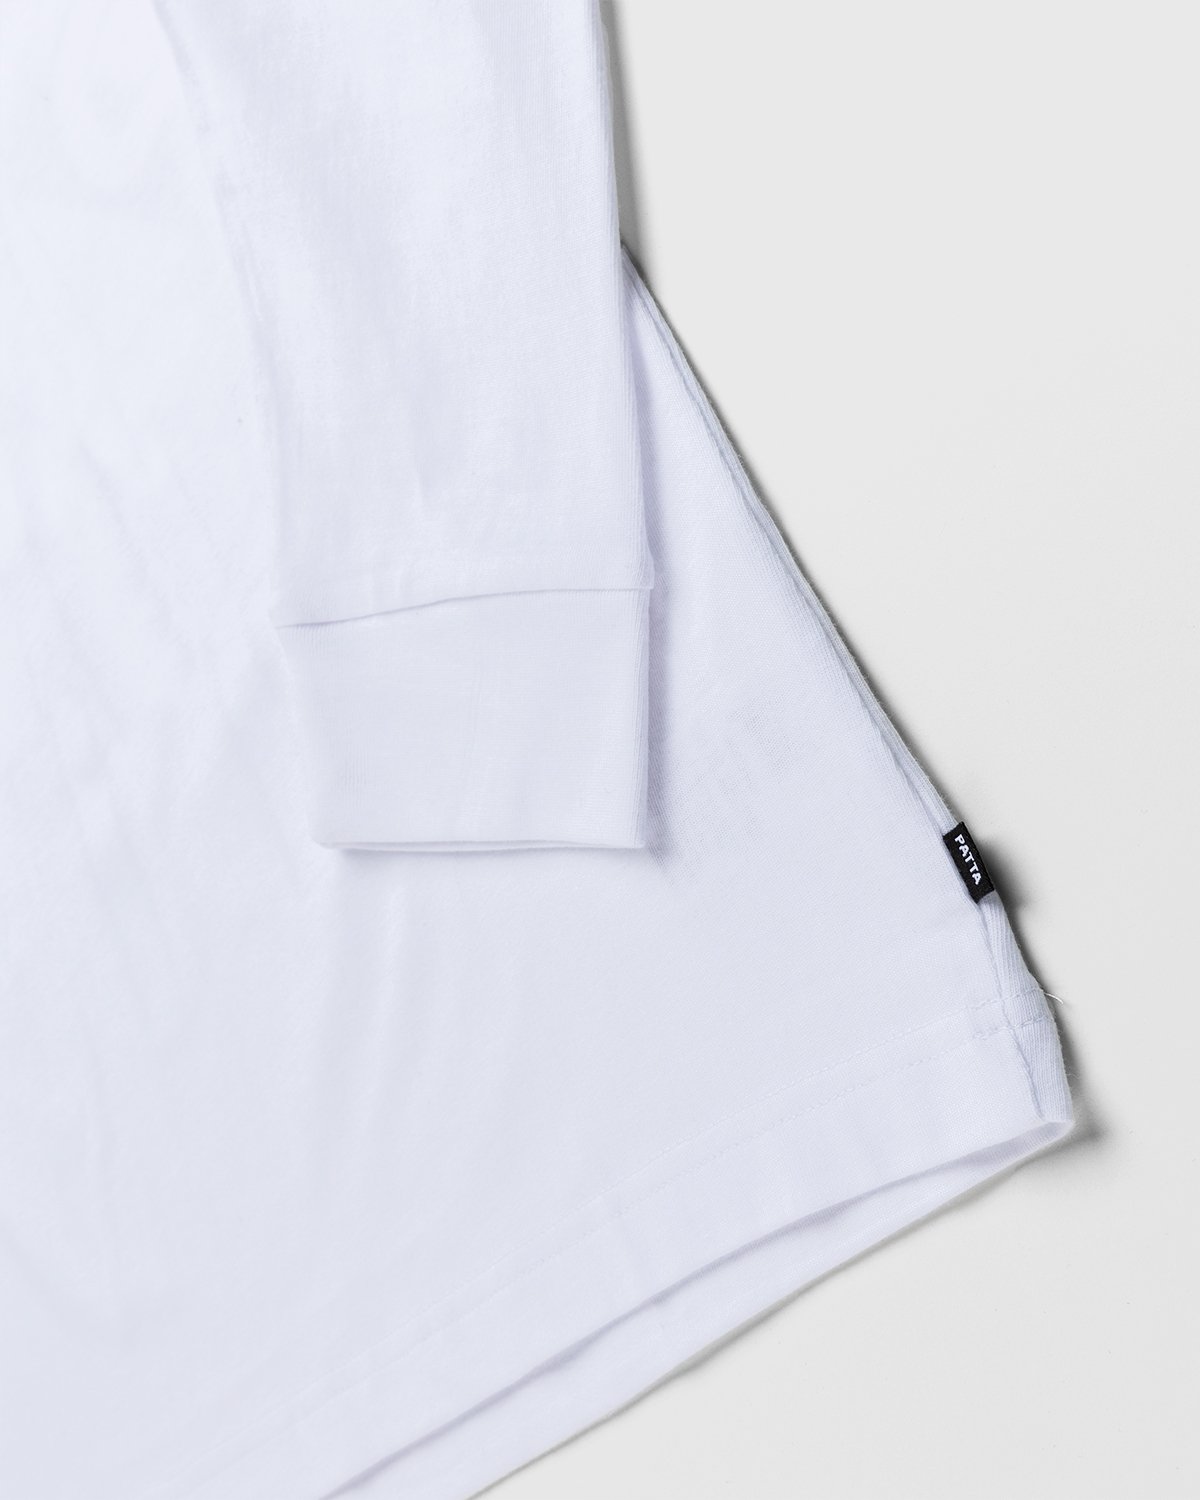 Patta - Positive Vibrations Longsleeve White - Clothing - White - Image 4